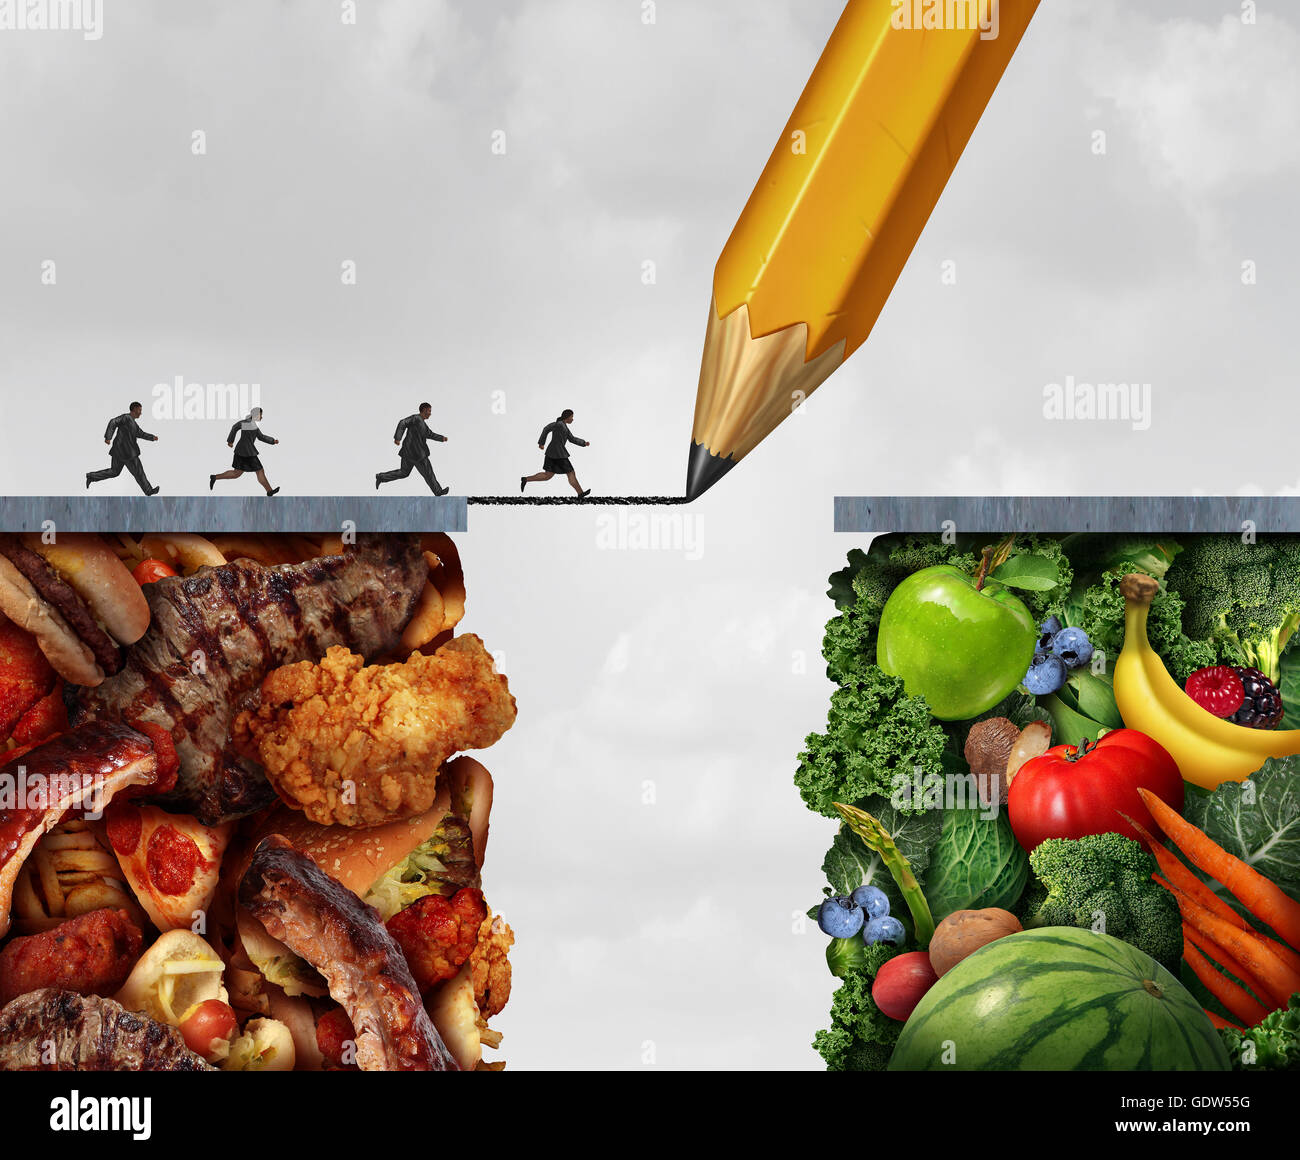 Wechsel zu Vegan und eine Umstellung auf vegetarische Kost Lebensstil als eine Gruppe von übergewichtigen Menschen quer über eine Bleistiftzeichnung Brücke aus Fleisch und fettigen Junk-Food auf frisches Obst und Gemüse mit 3D Abbildung Elemente. Stockfoto